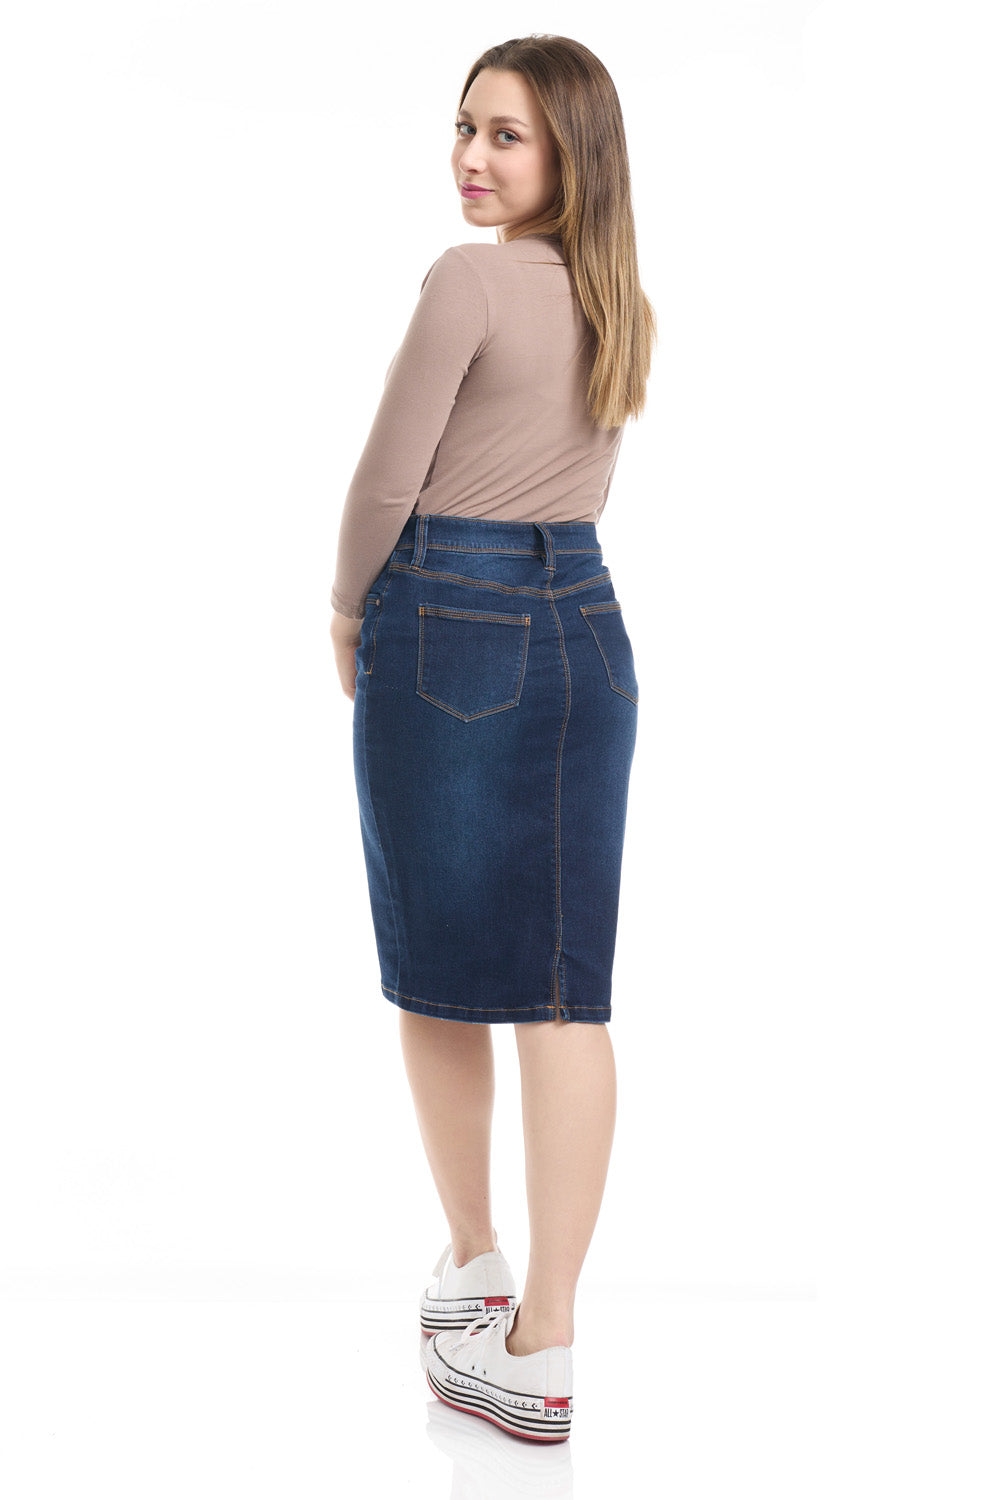 blue jean modest knee length stretchy denim skirt for women